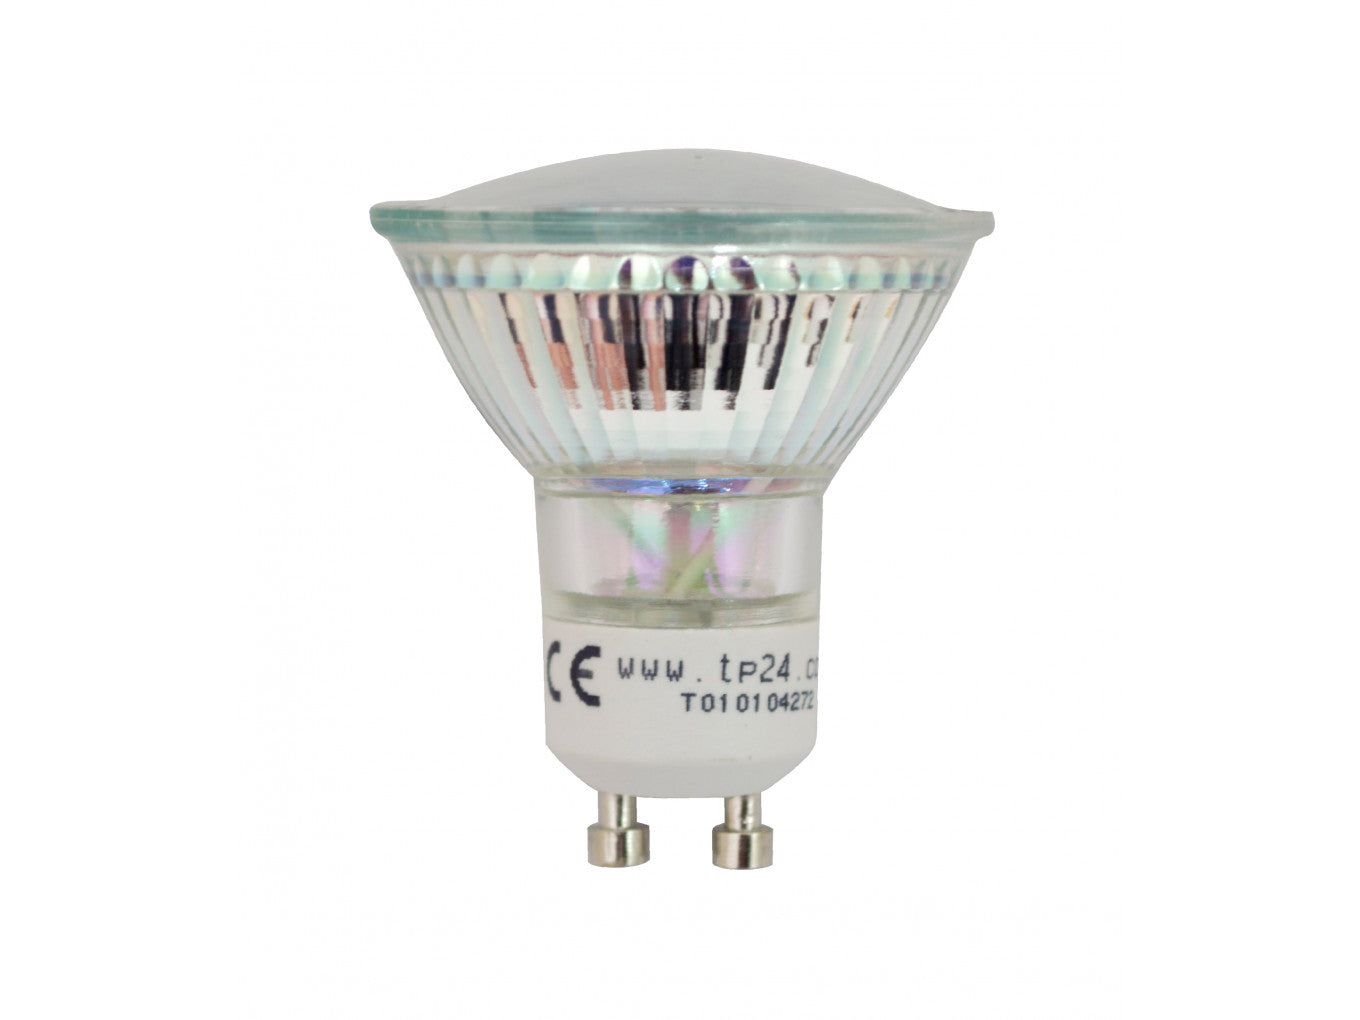 1 x Tp24 8710 LED 3.5W Clear Spot L1/GU10 Cap (2882 & 2880 Replacement)